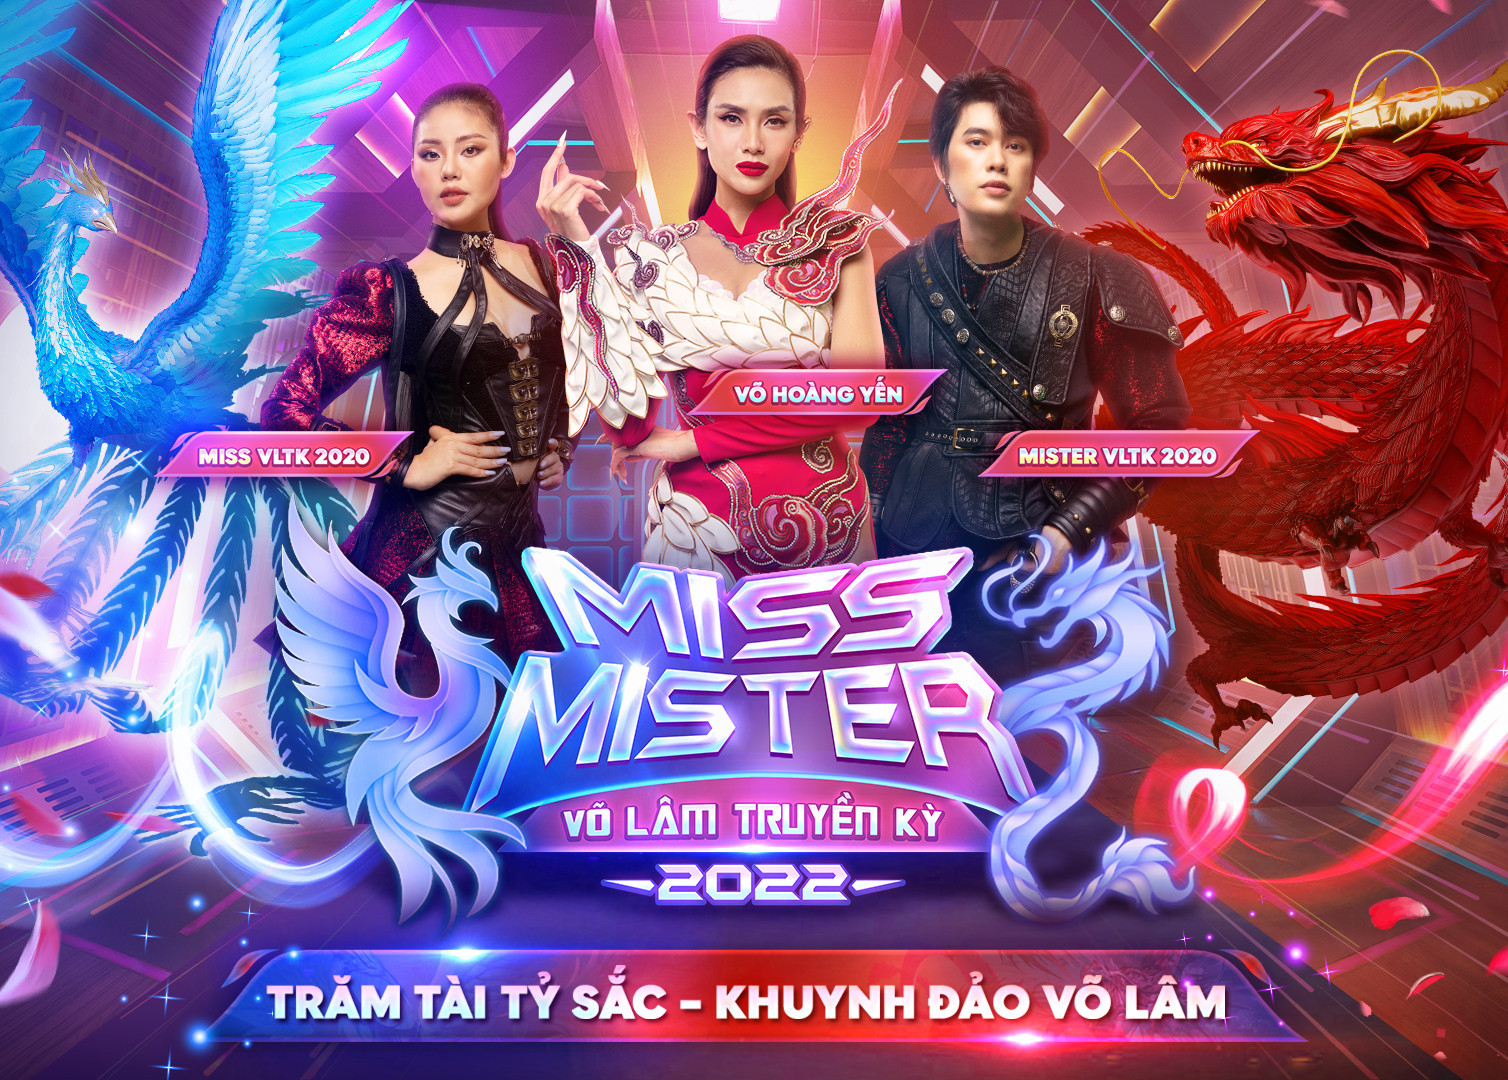 Đấu trường nhan sắc Miss & Mister VLTK chính thức công phá làng game Việt